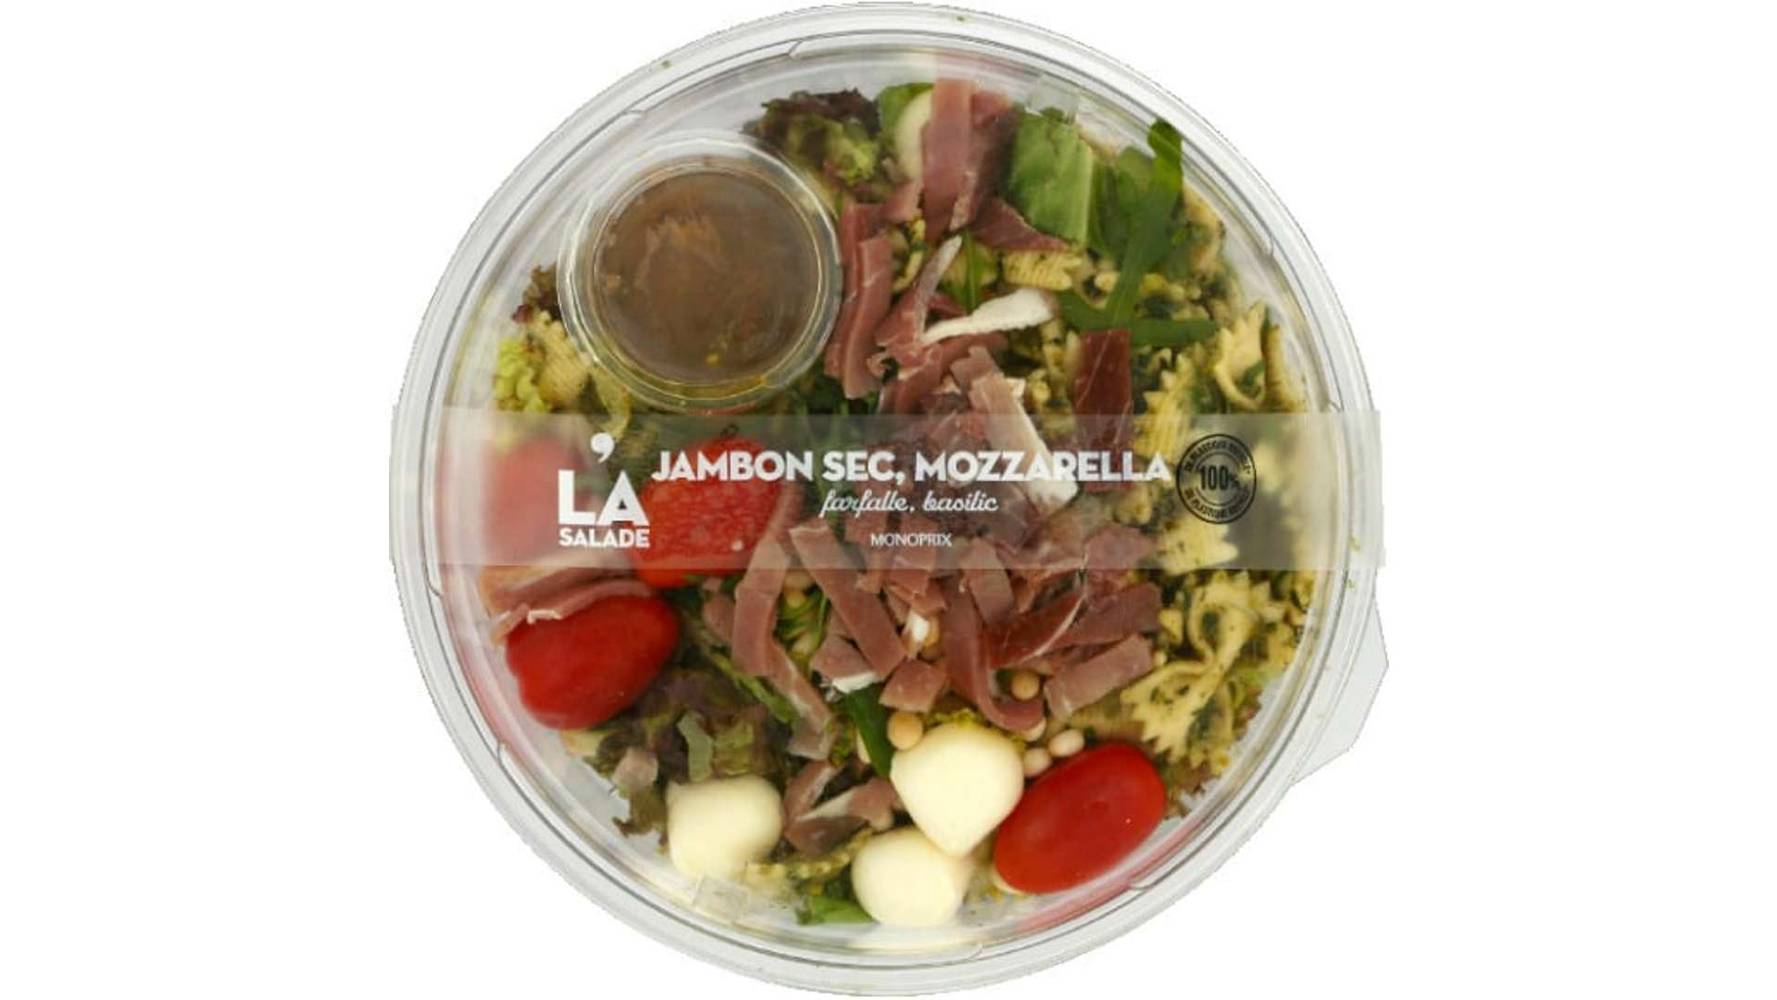 Monoprix Salade jambon sec, mozzarella farfalle - La Salade La barquette de 265 g